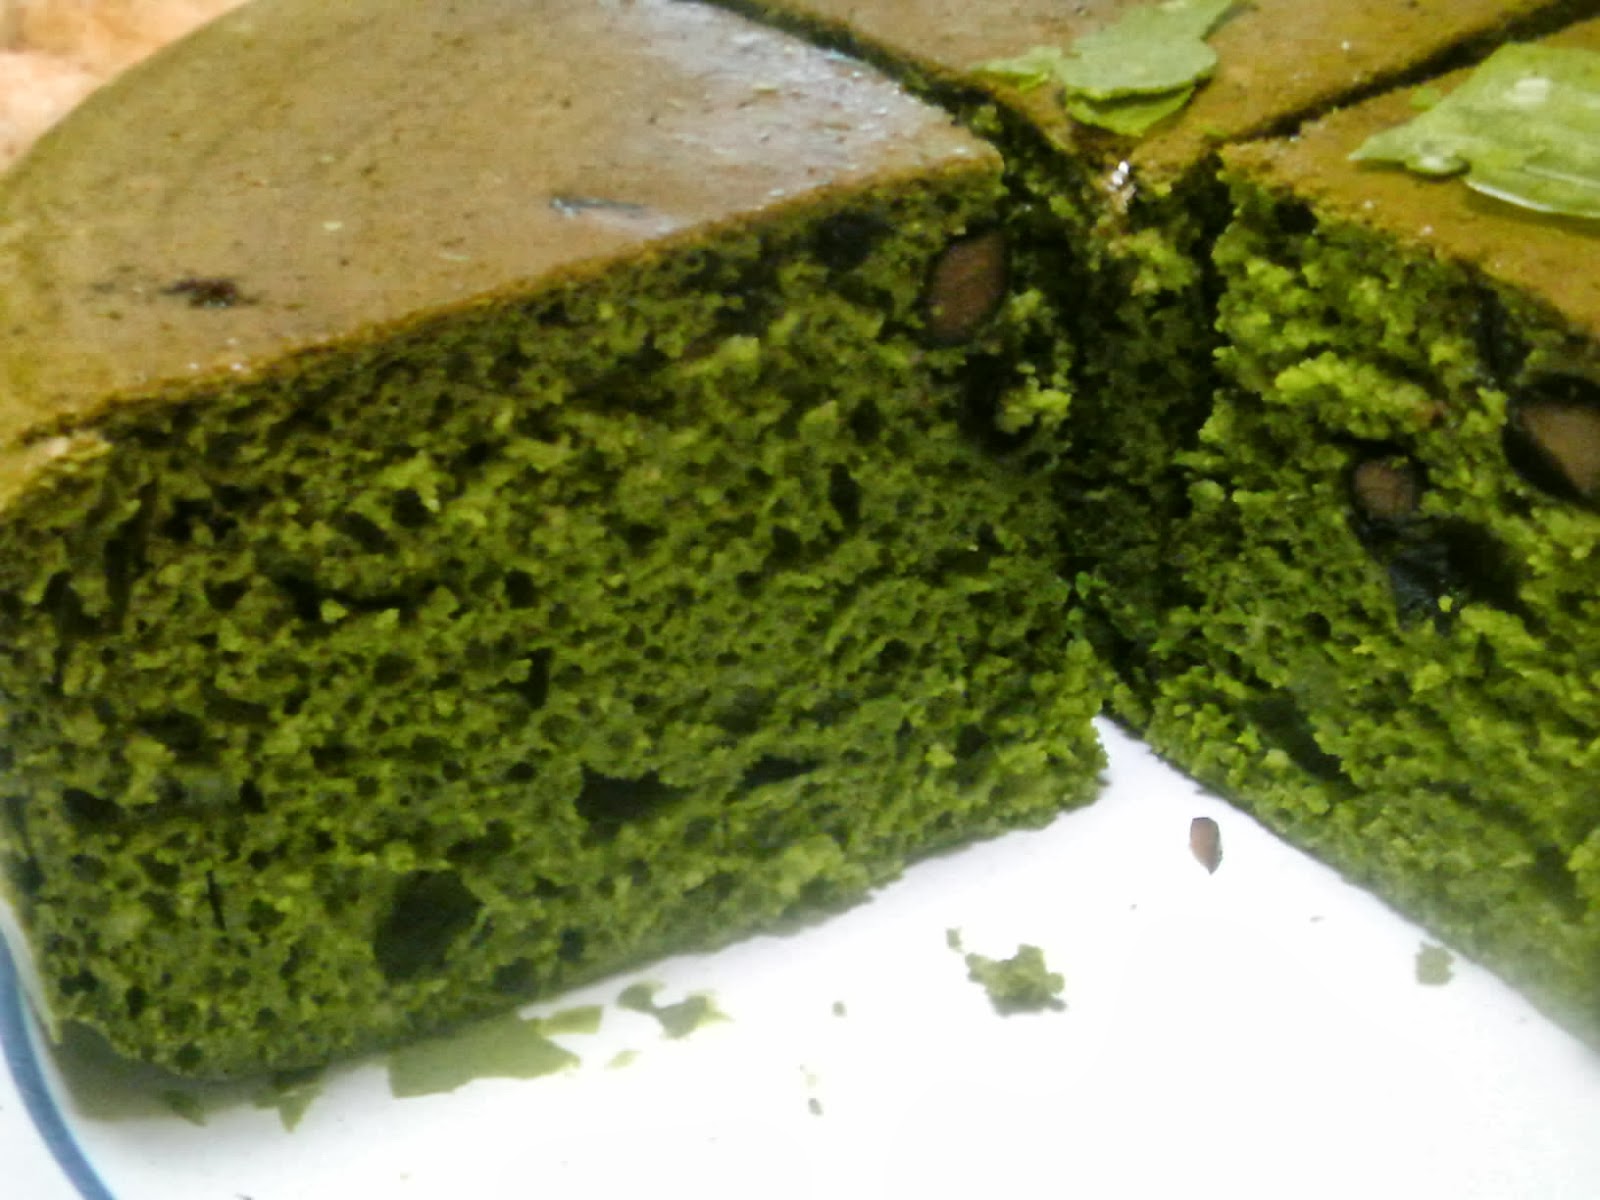 今日のヘルシーメニュー Japanese Healthy Menu 炊飯器とホットケーキミックスで作った 抹茶ケーキ The Green Tea Cake Made With Pancake Mix And Rice Cooker